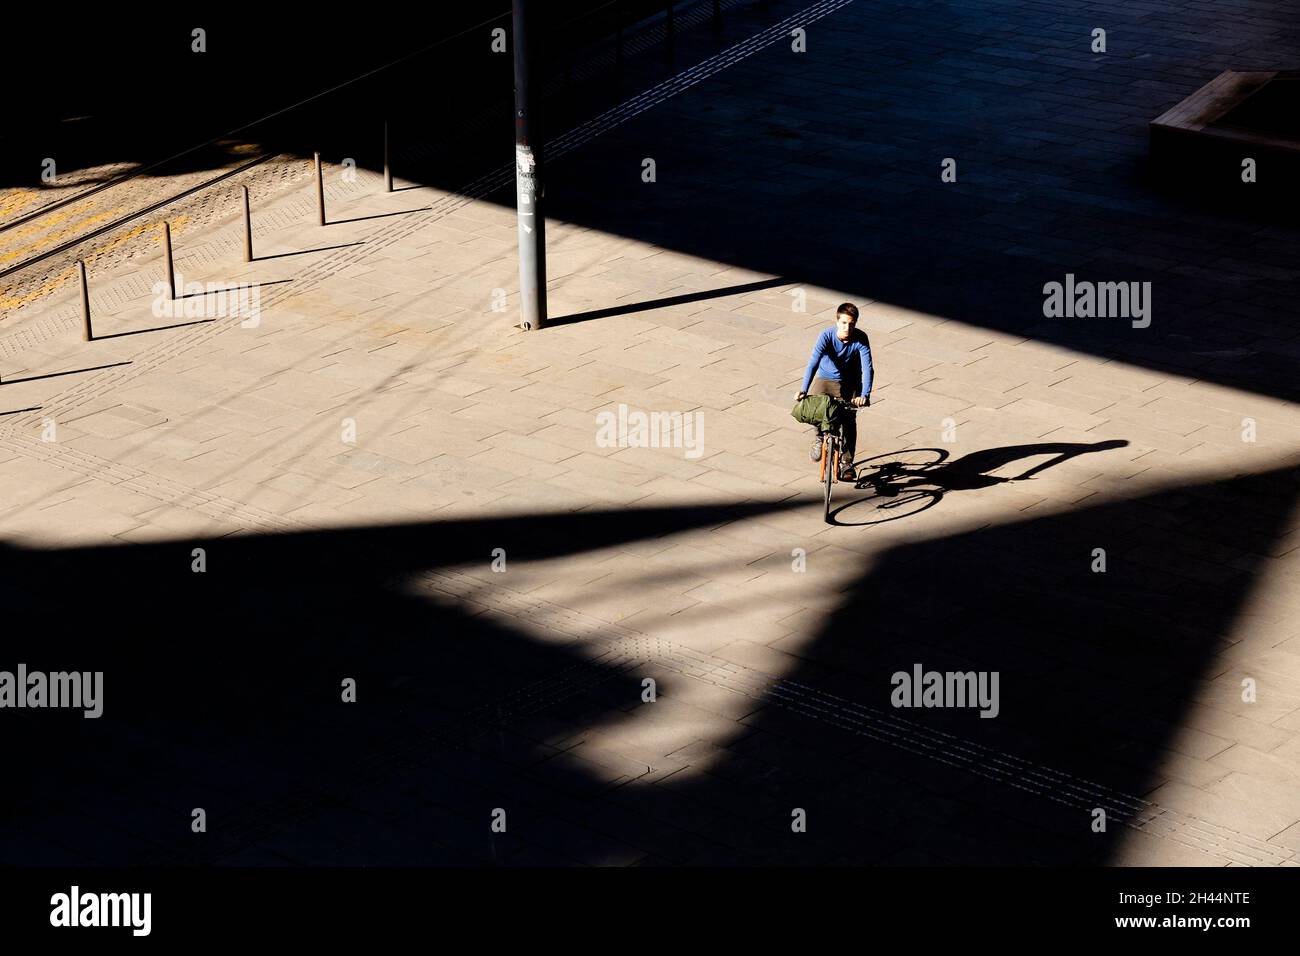 Belgrade, Serbie - 26 octobre 2020 : un adolescent à vélo sur la place de la ville en plein soleil, vue en grand angle avec ombres Banque D'Images